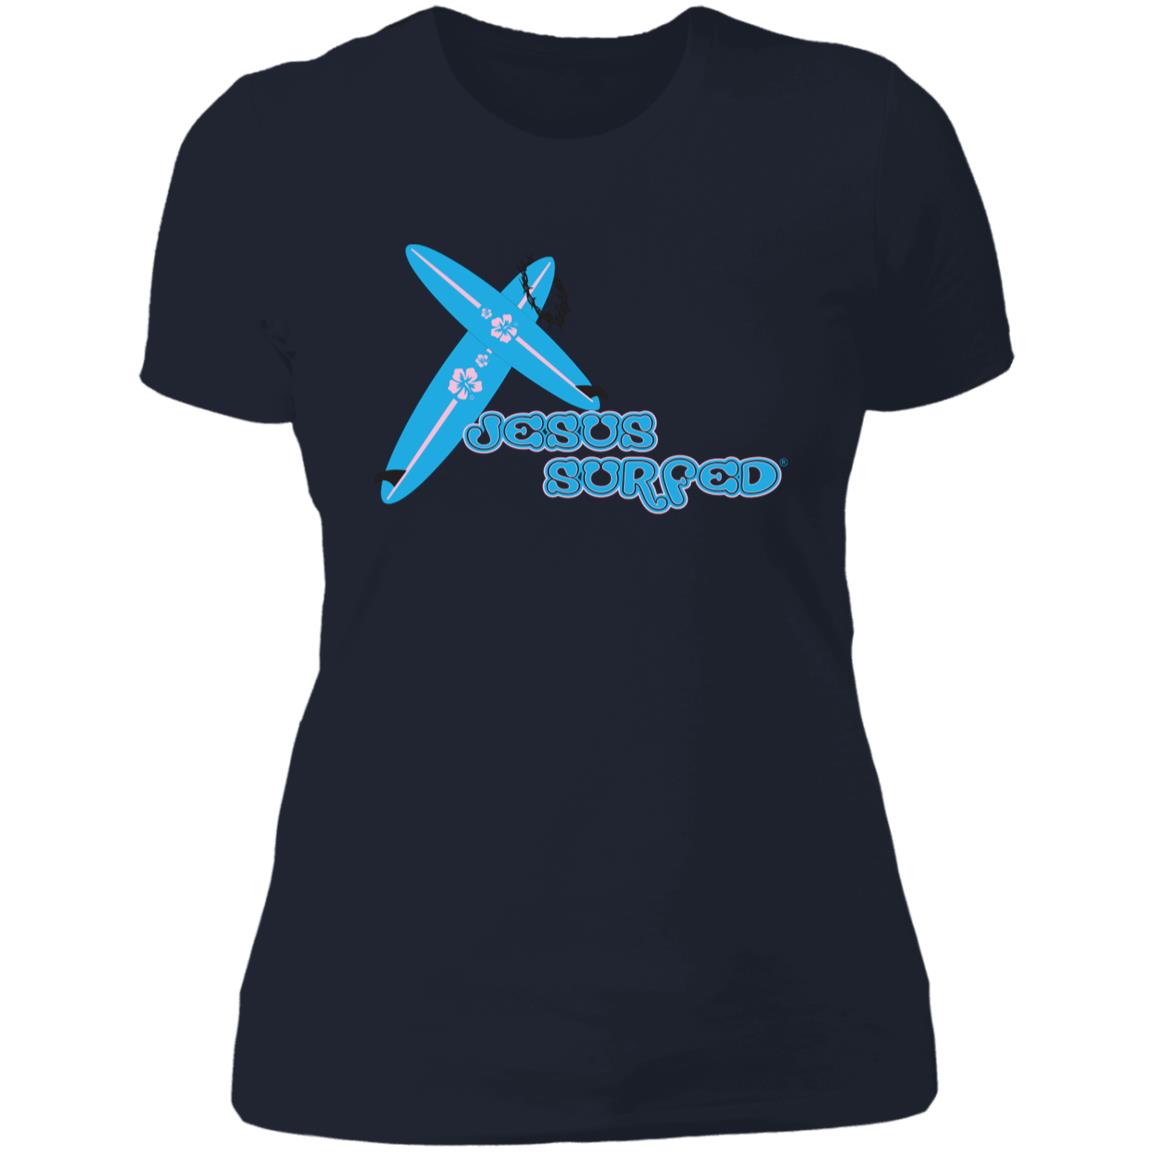 Crossboards Women's Boyfriend T-Shirt